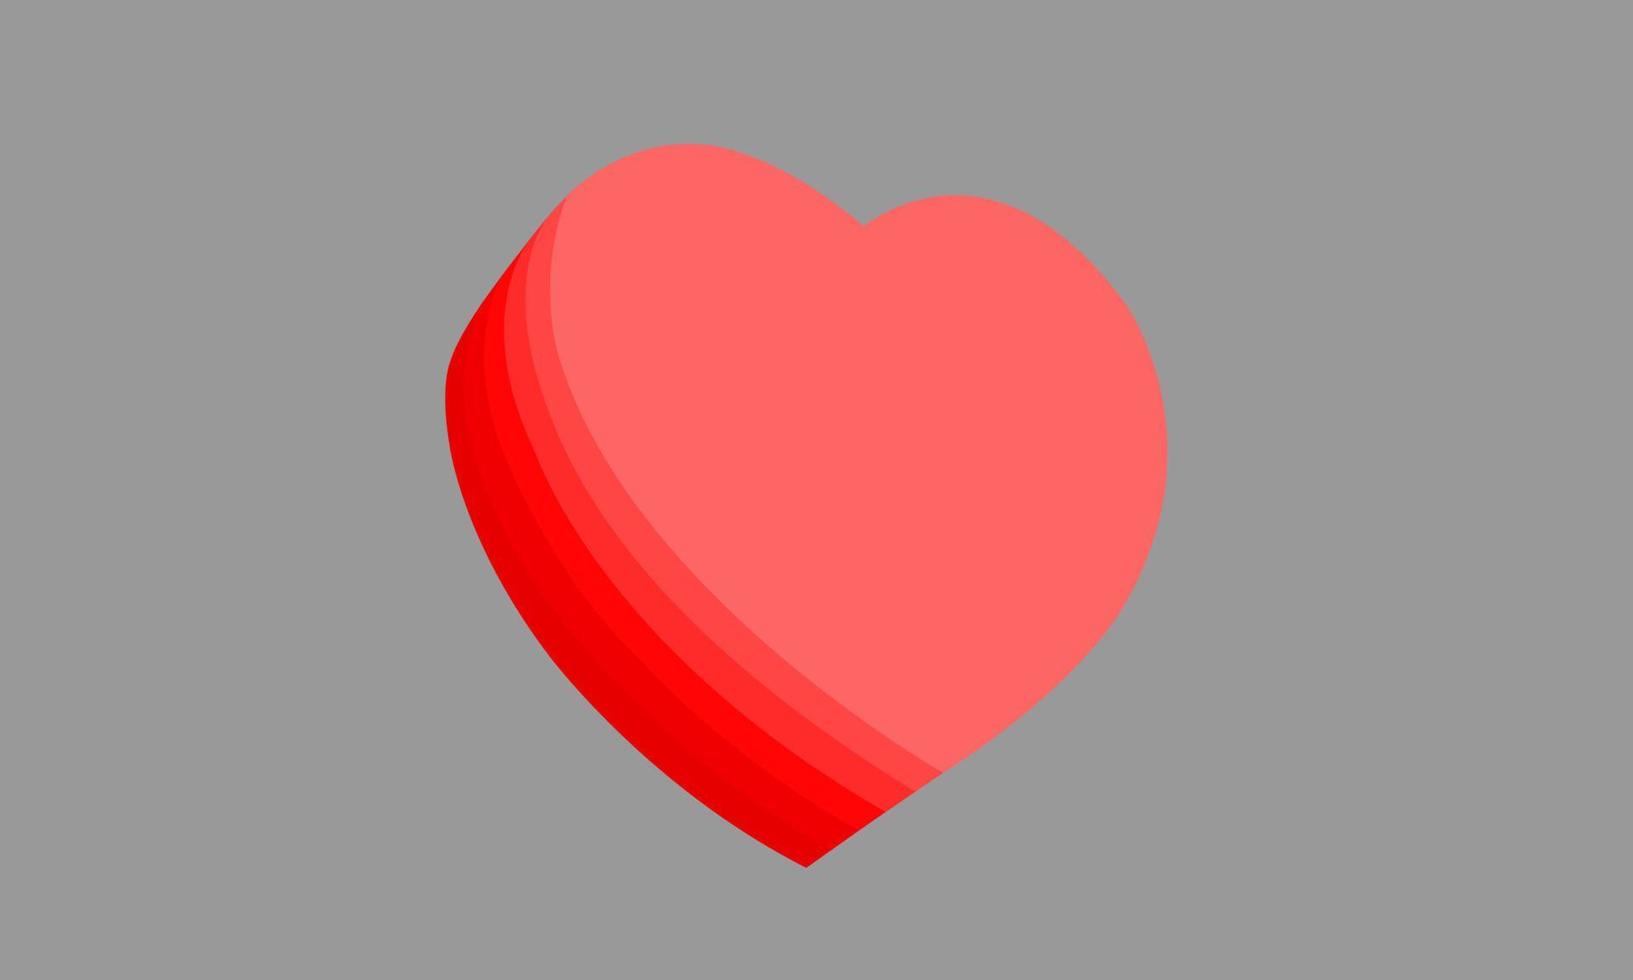 den röda hjärtplattan är lager i lager. visa sidovy, hjärtats tjocklek. illustration på en grå bakgrund. vektor